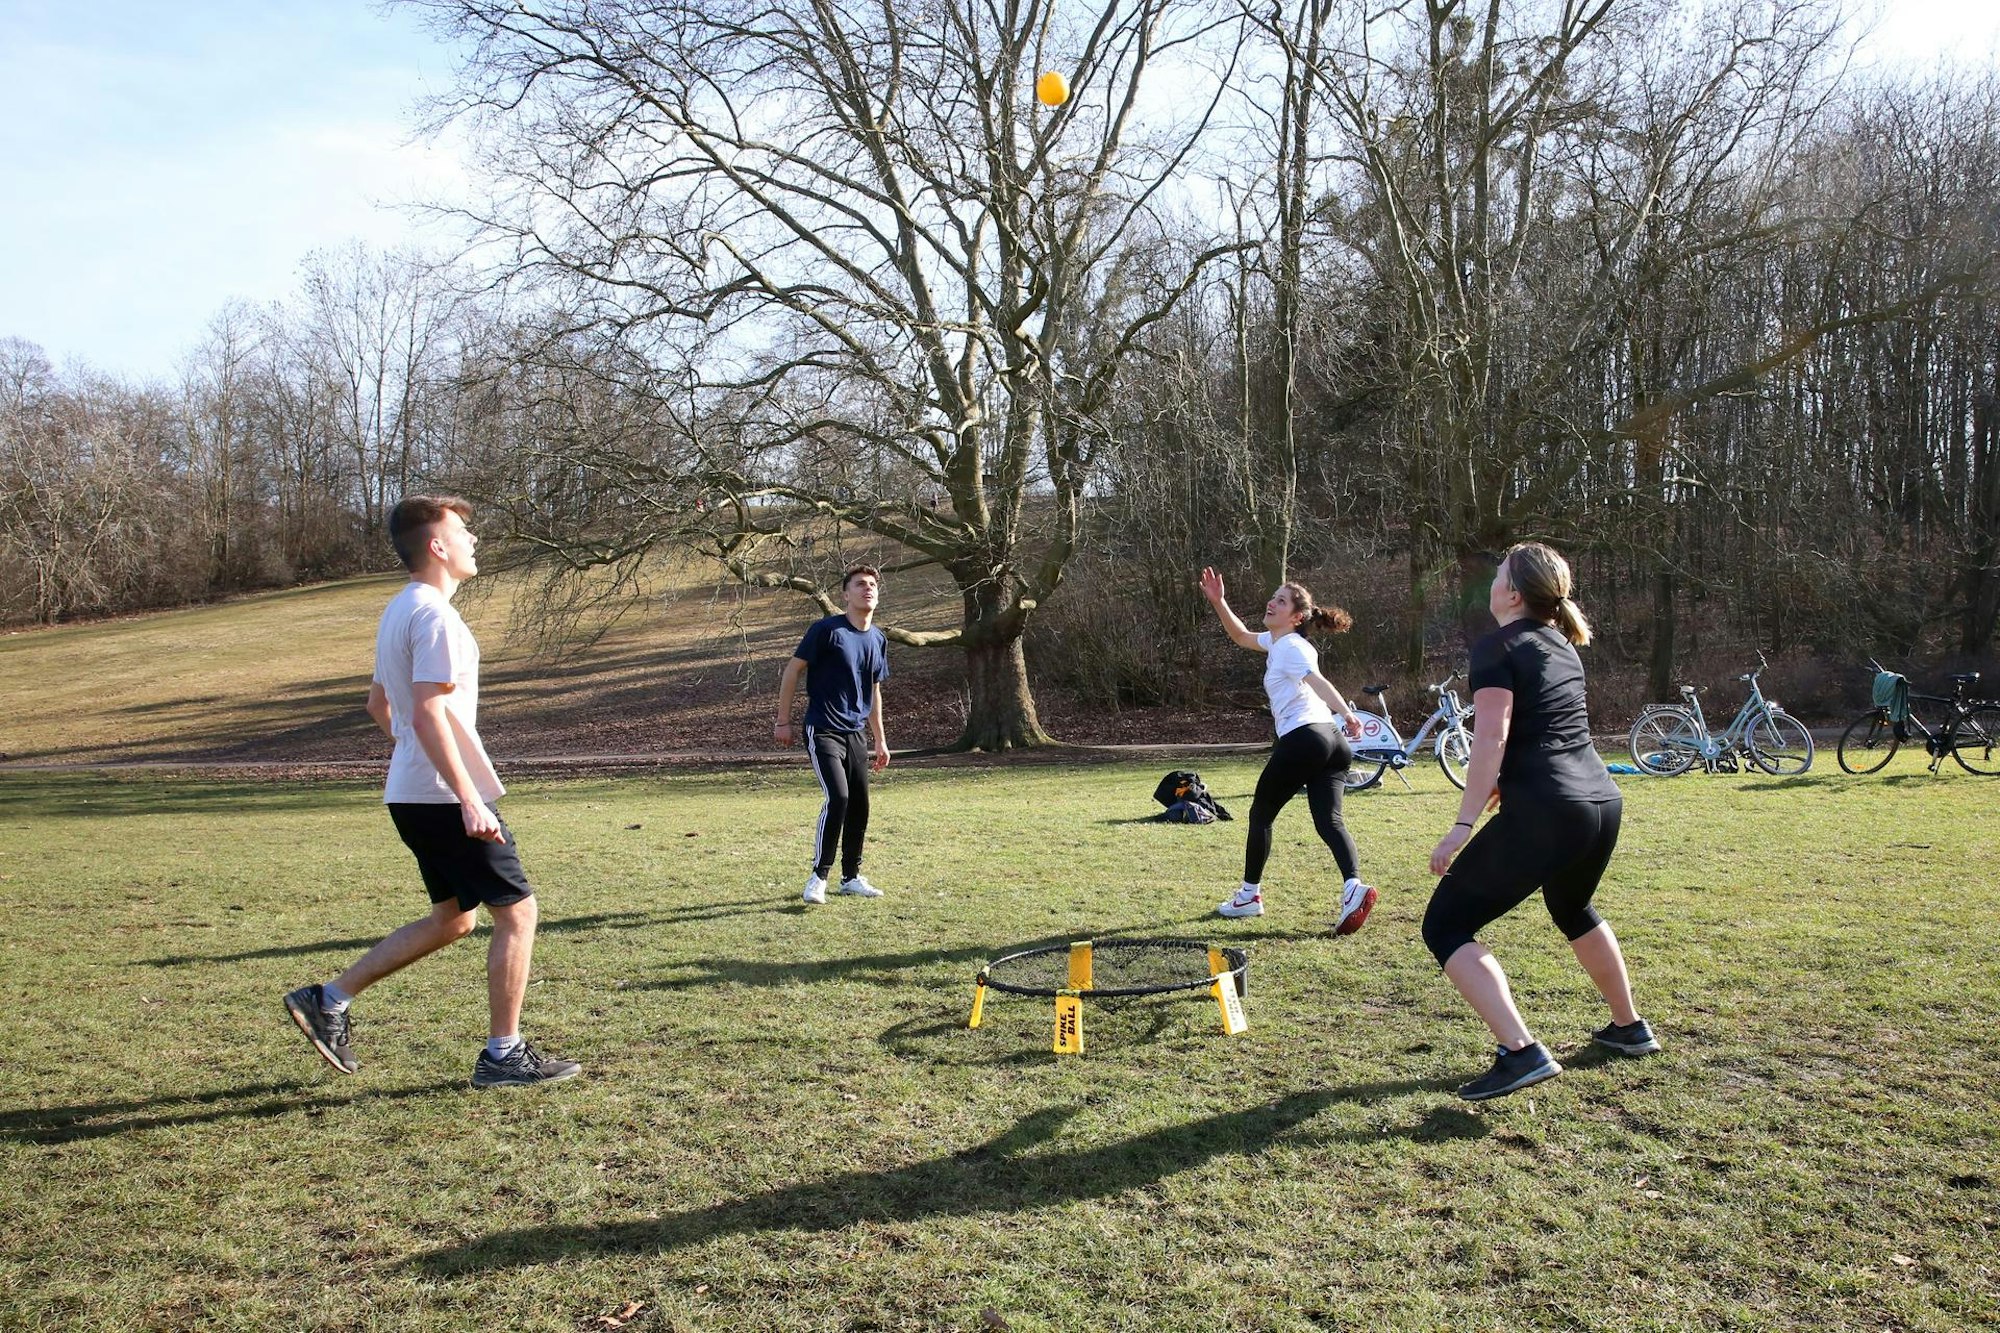 Eine Freundesgruppe hat sich im Kölner Beethovenpark zum Spikeball spielen getroffen